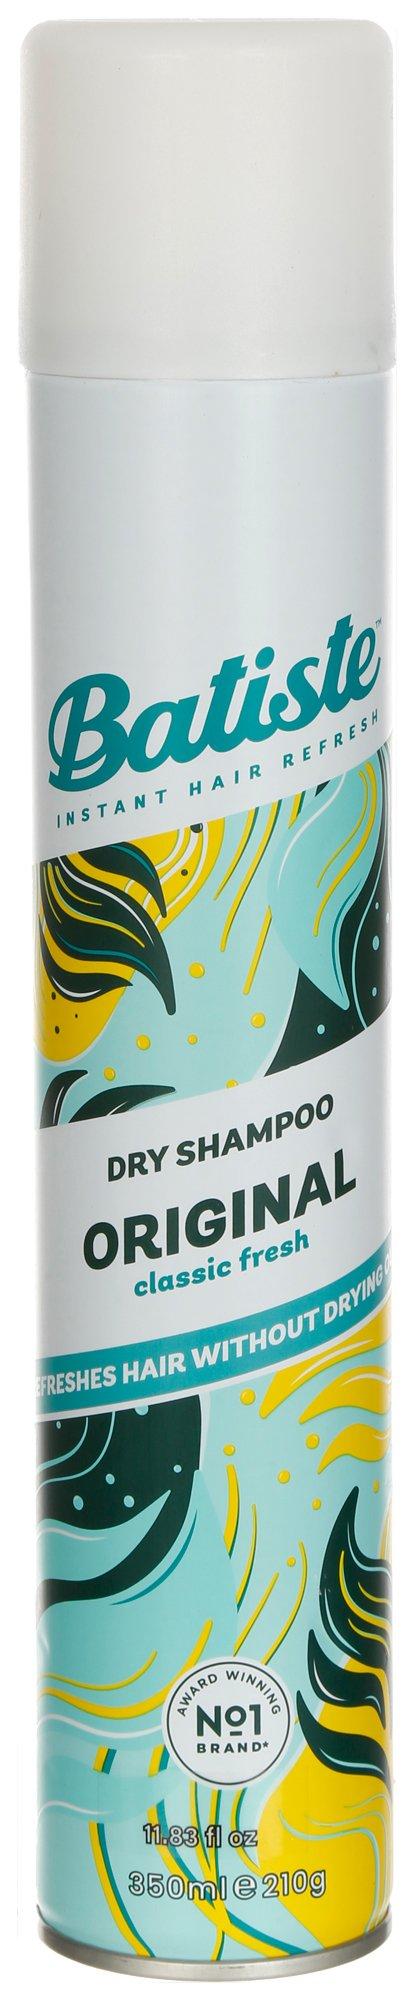 11 oz Original Classic Fresh Dry Shampoo